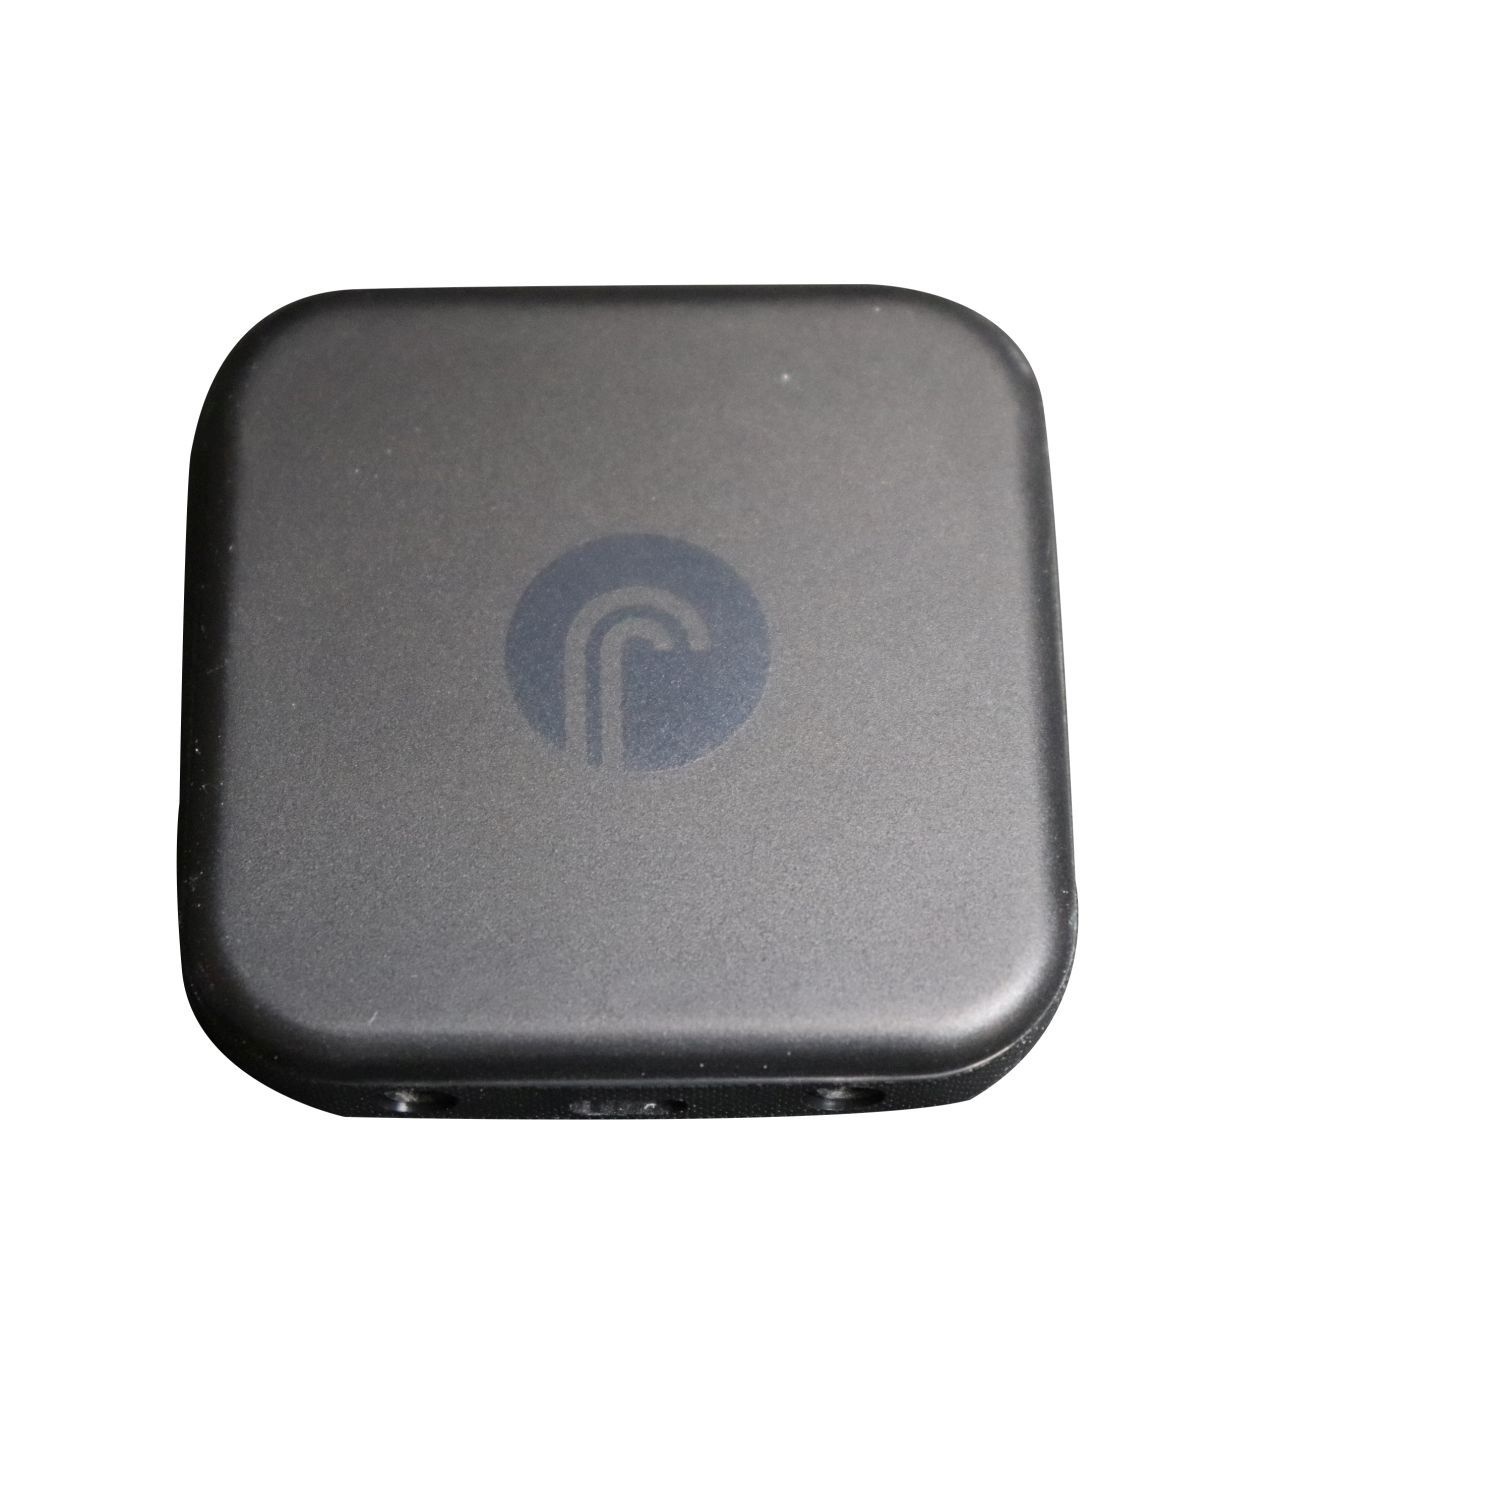 Direct Sound fstream X7 Bluetooth Receiver